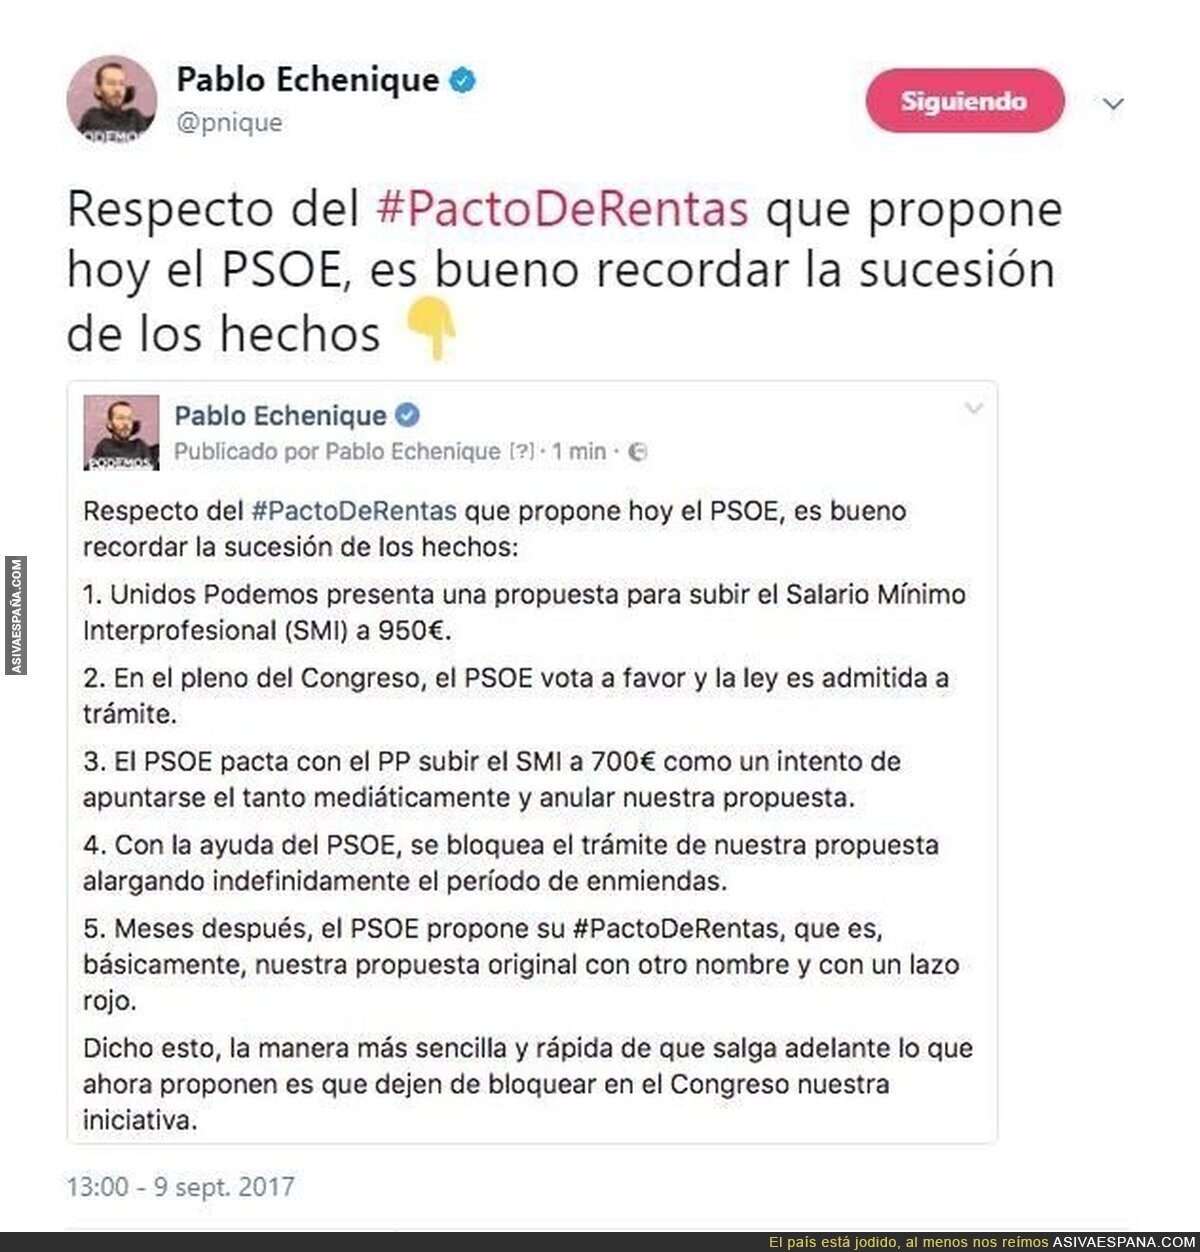 El "nuevo" PSOE, que es calcadisimo al viejo...